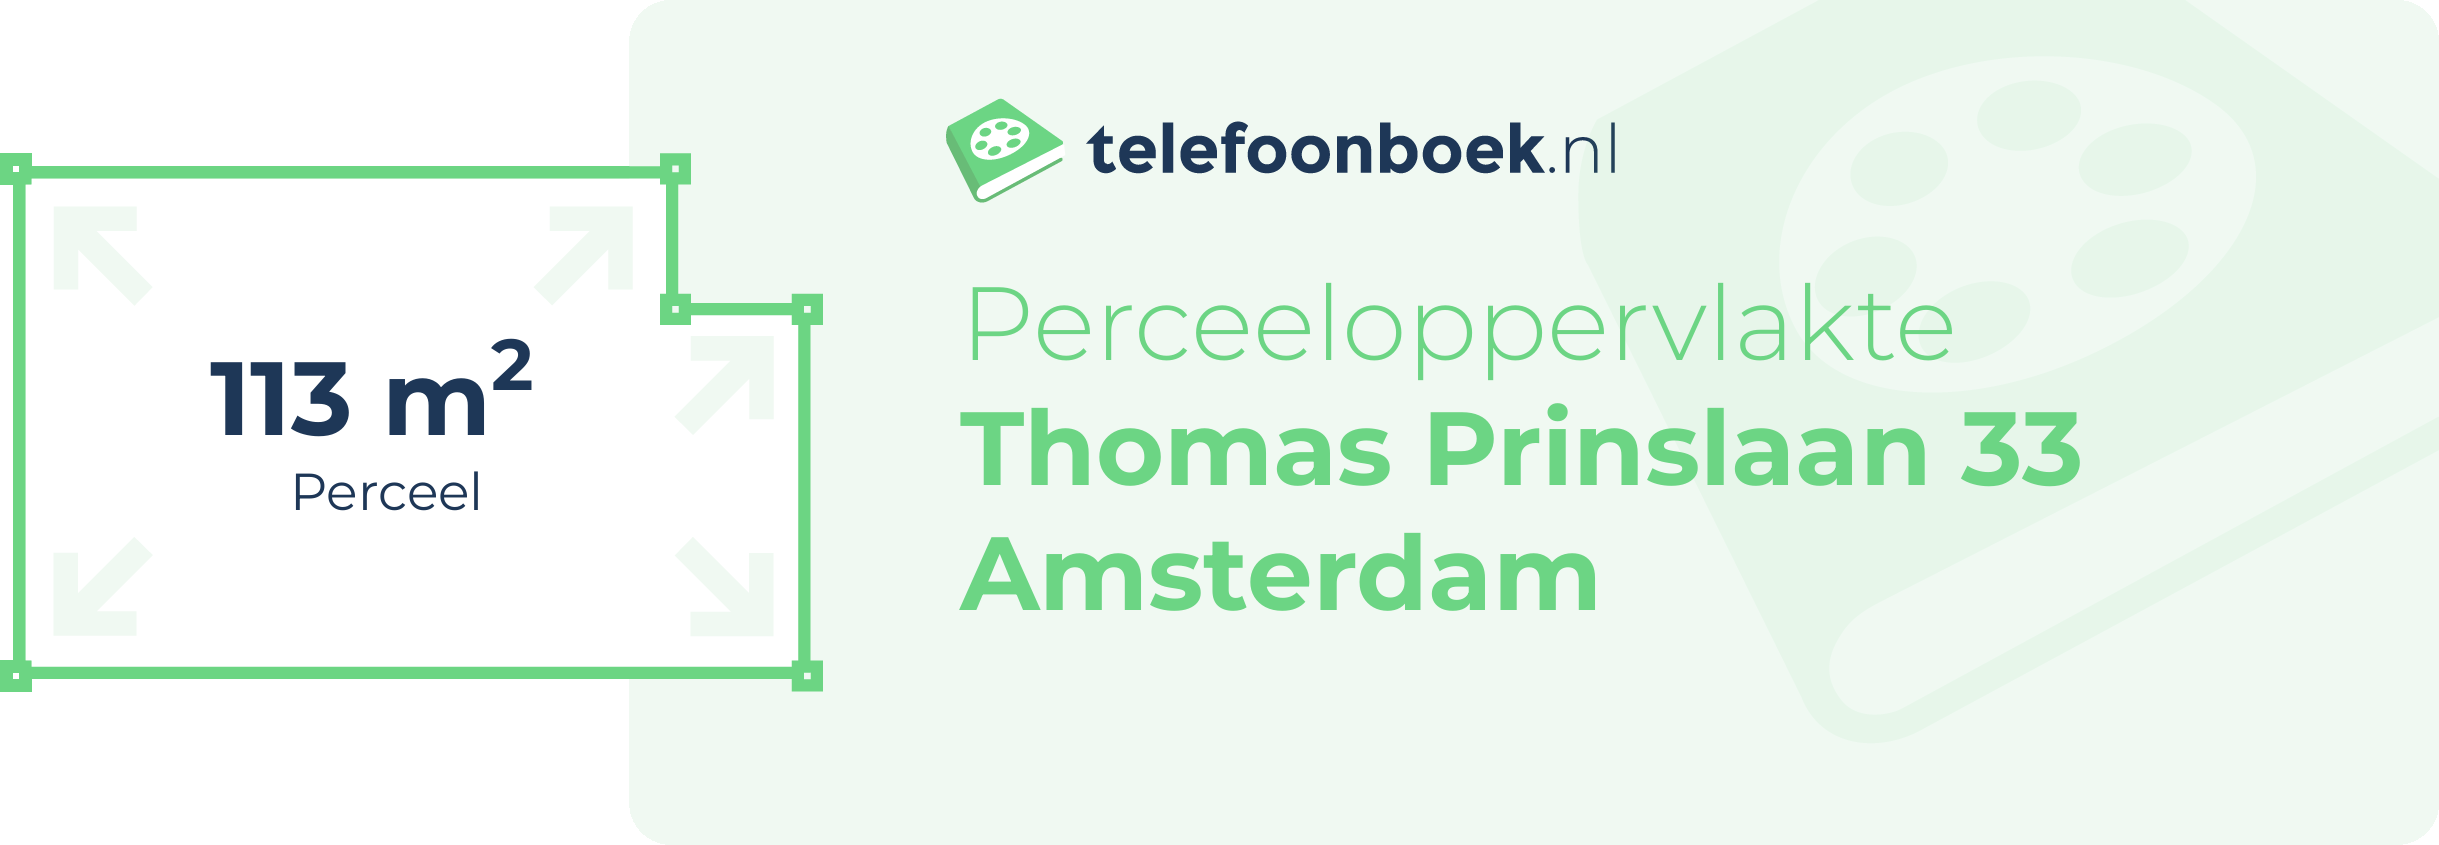 Perceeloppervlakte Thomas Prinslaan 33 Amsterdam